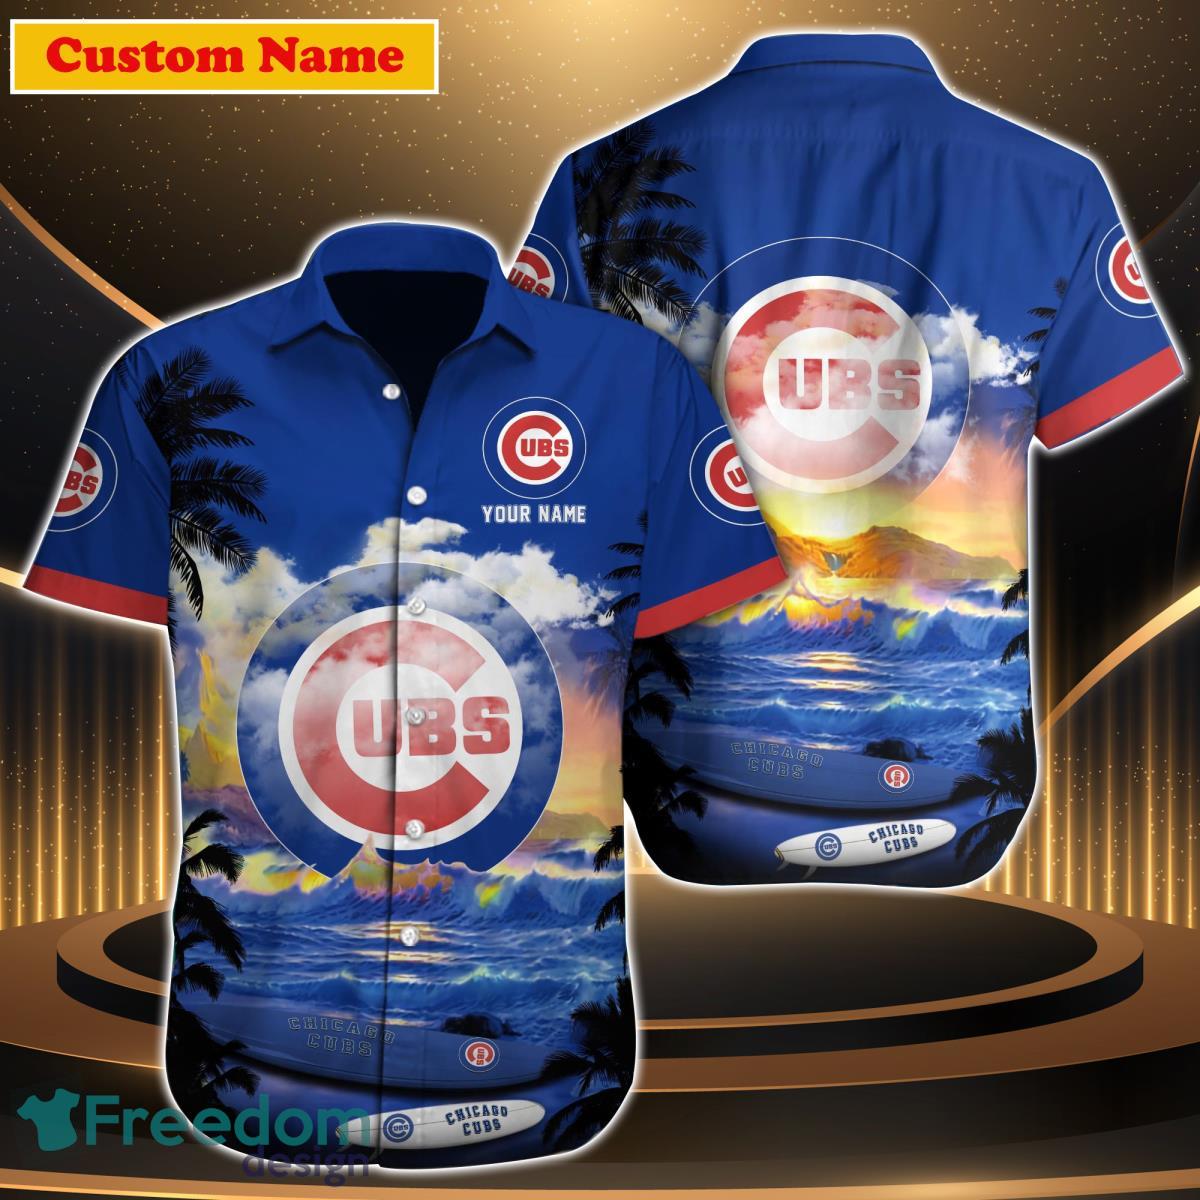 Chicago Cubs & Kiss Fans Hawaiian Shirt For Men Women - Freedomdesign